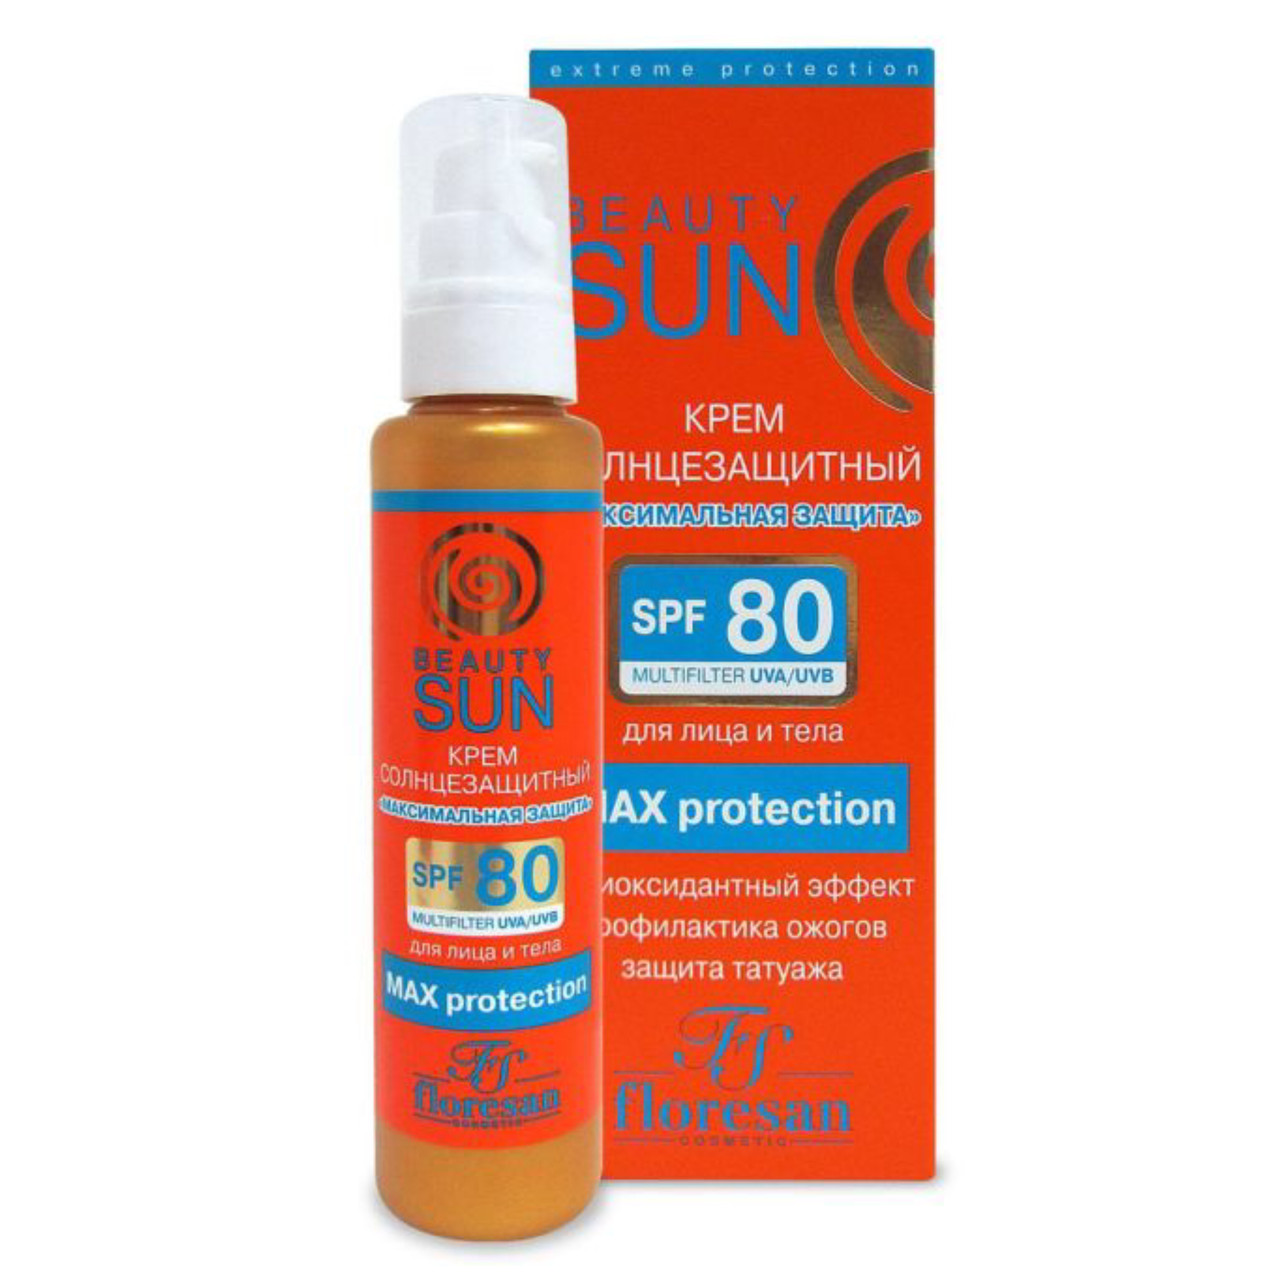 Крем солнцезащитный Floresan Beauty Sun Максимальная защита SPF80, 75мл